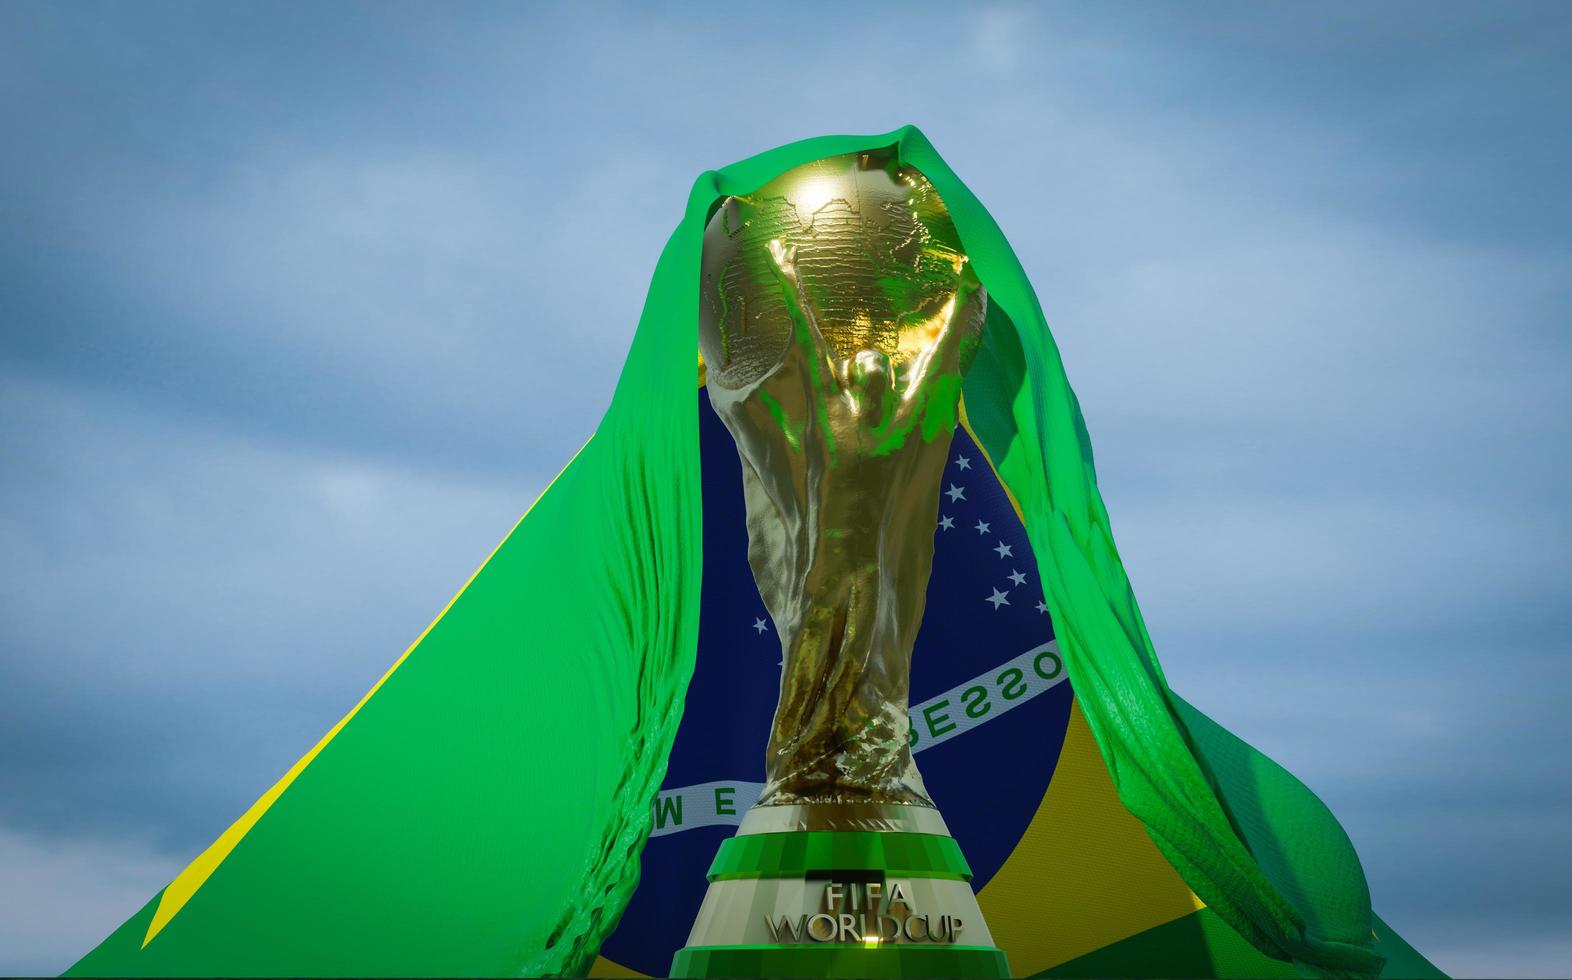 Brésil. coupe du monde de la fifa avec le drapeau du brésil, vainqueur de la coupe du monde de football du qatar 2022, travail 3d et image 3d, erevan, arménie - 2022 oct 04 photo